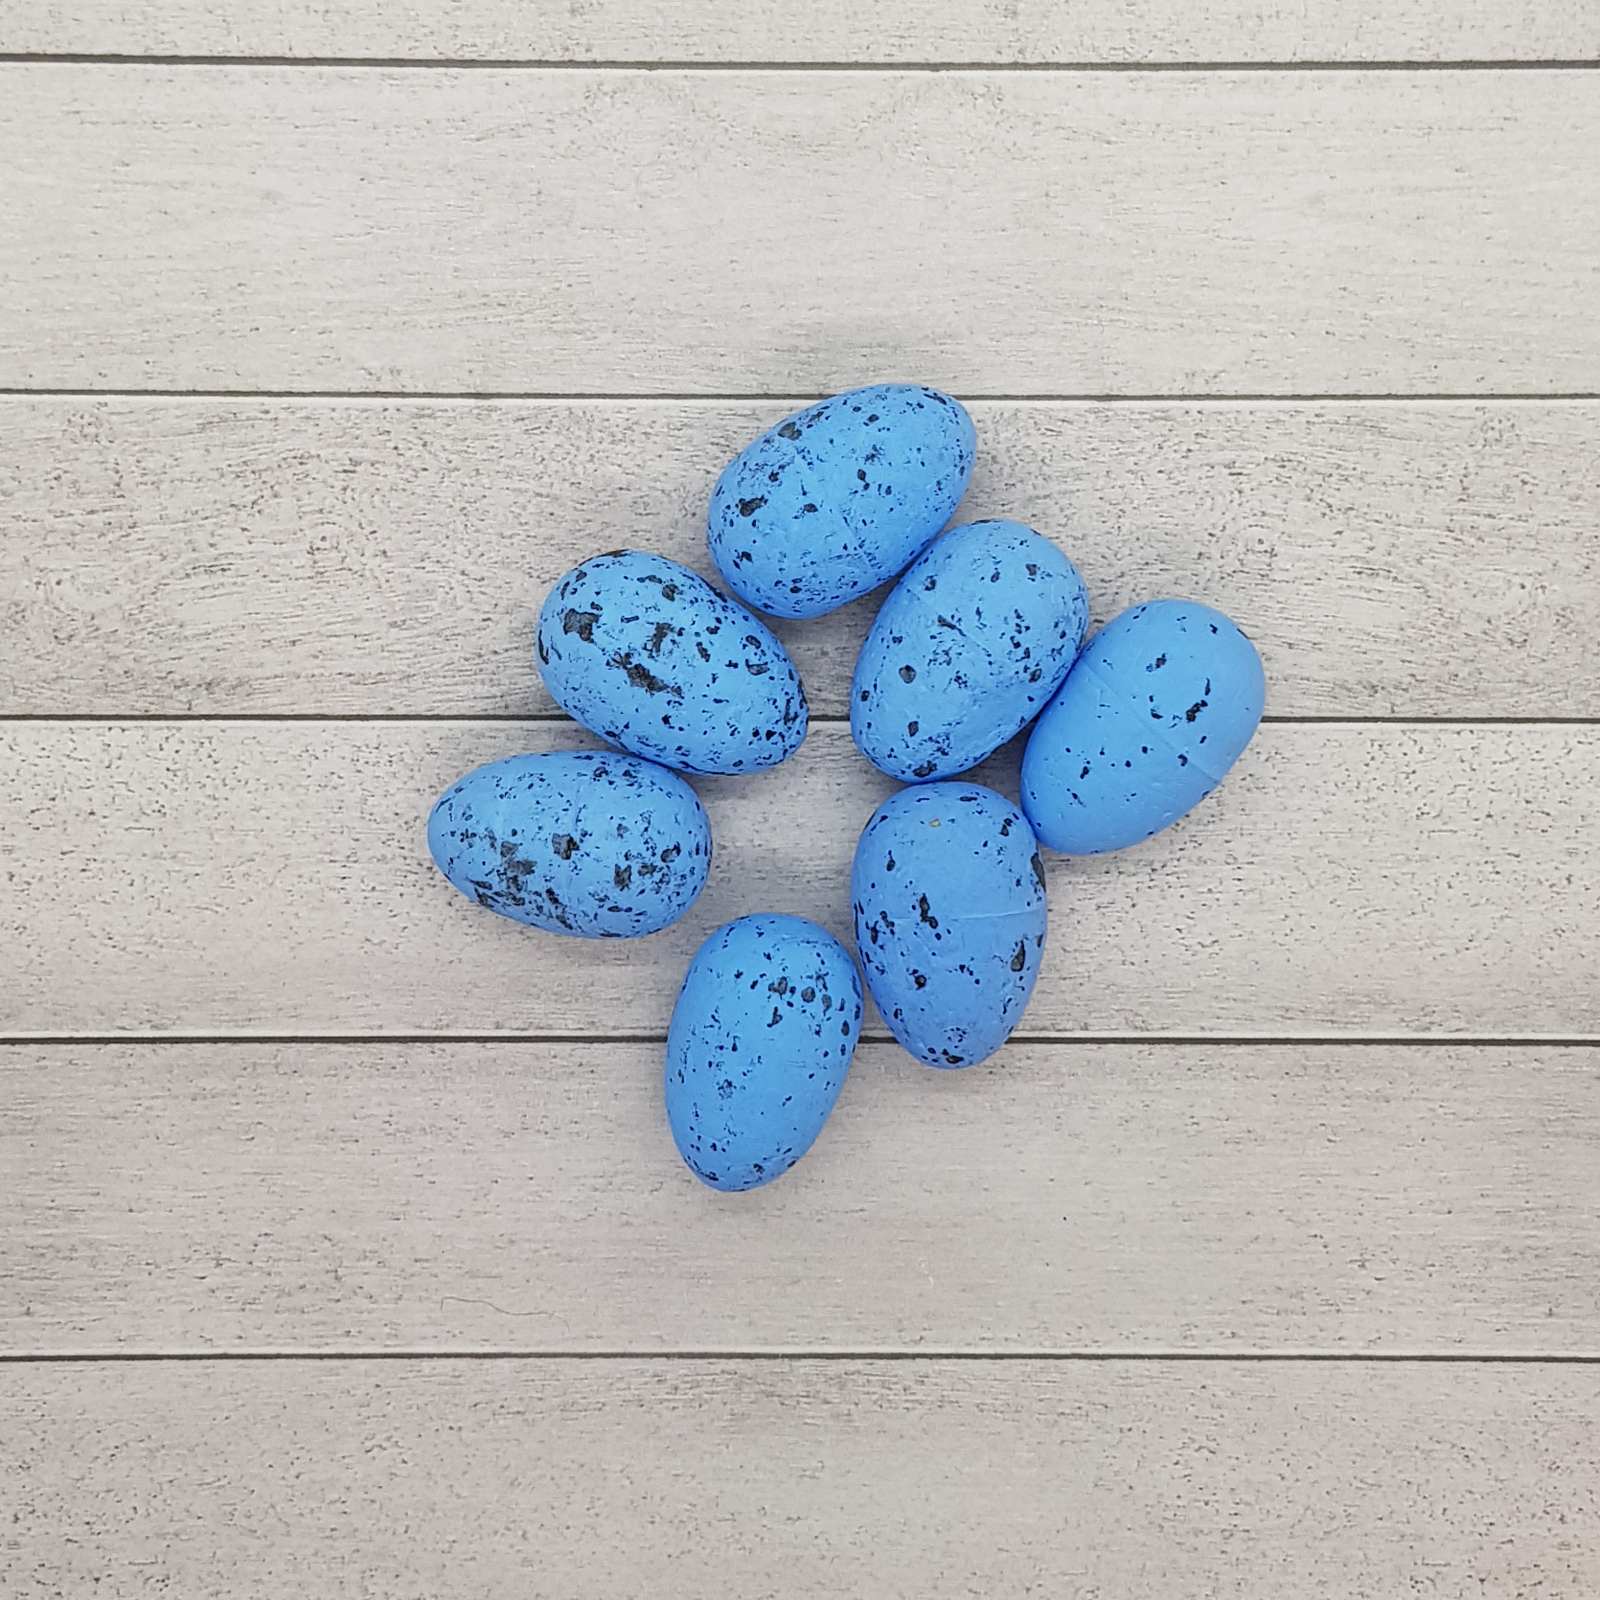 Яичко декоративное перепелиное, голубой цвет, 1 шт, 3 см